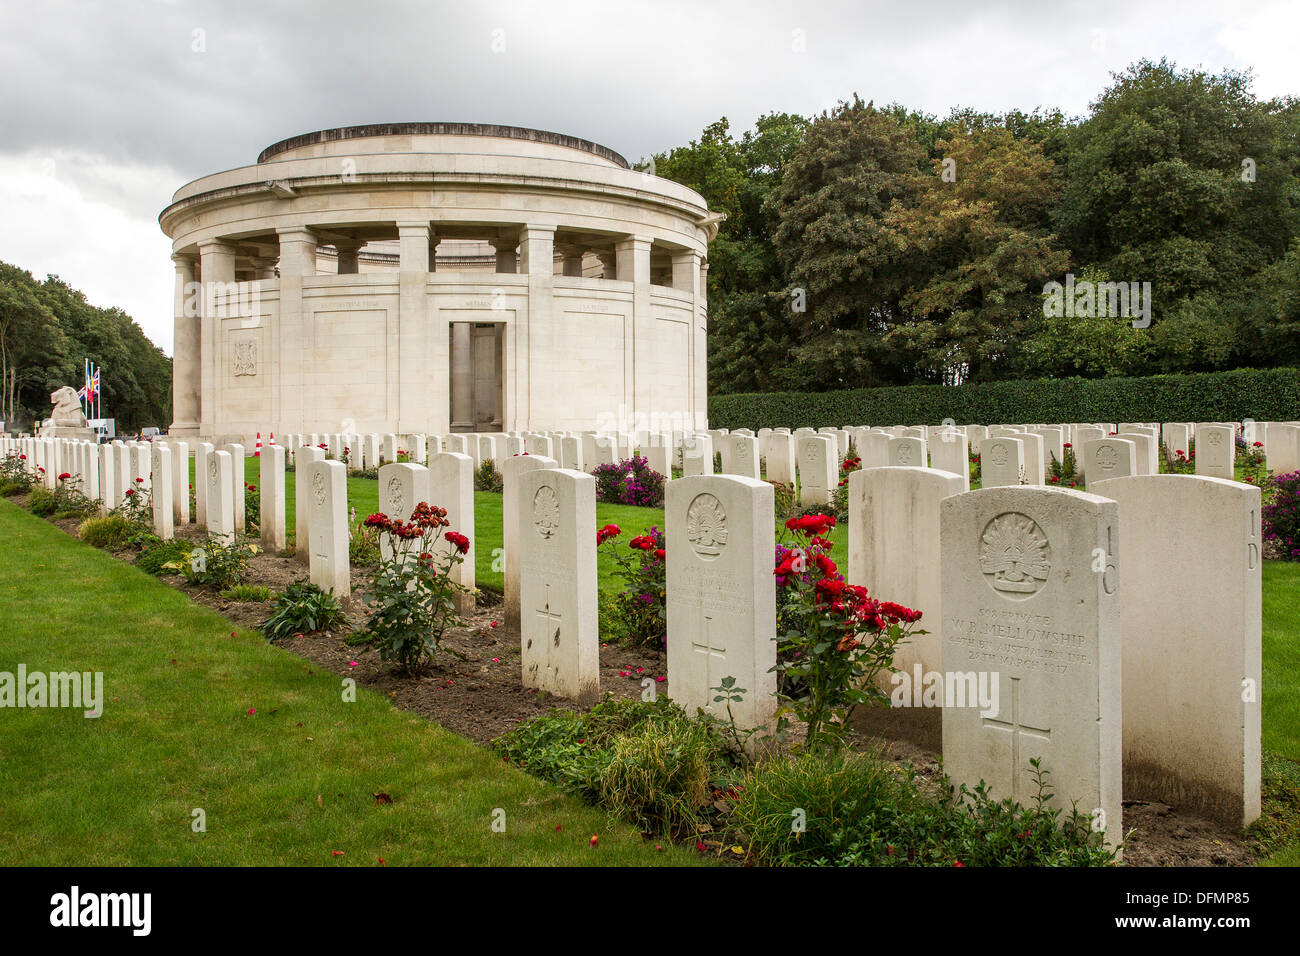 Ploegsteert memorial ww1 cemetery Belgium Belgian World War One cemeteries Stock Photo